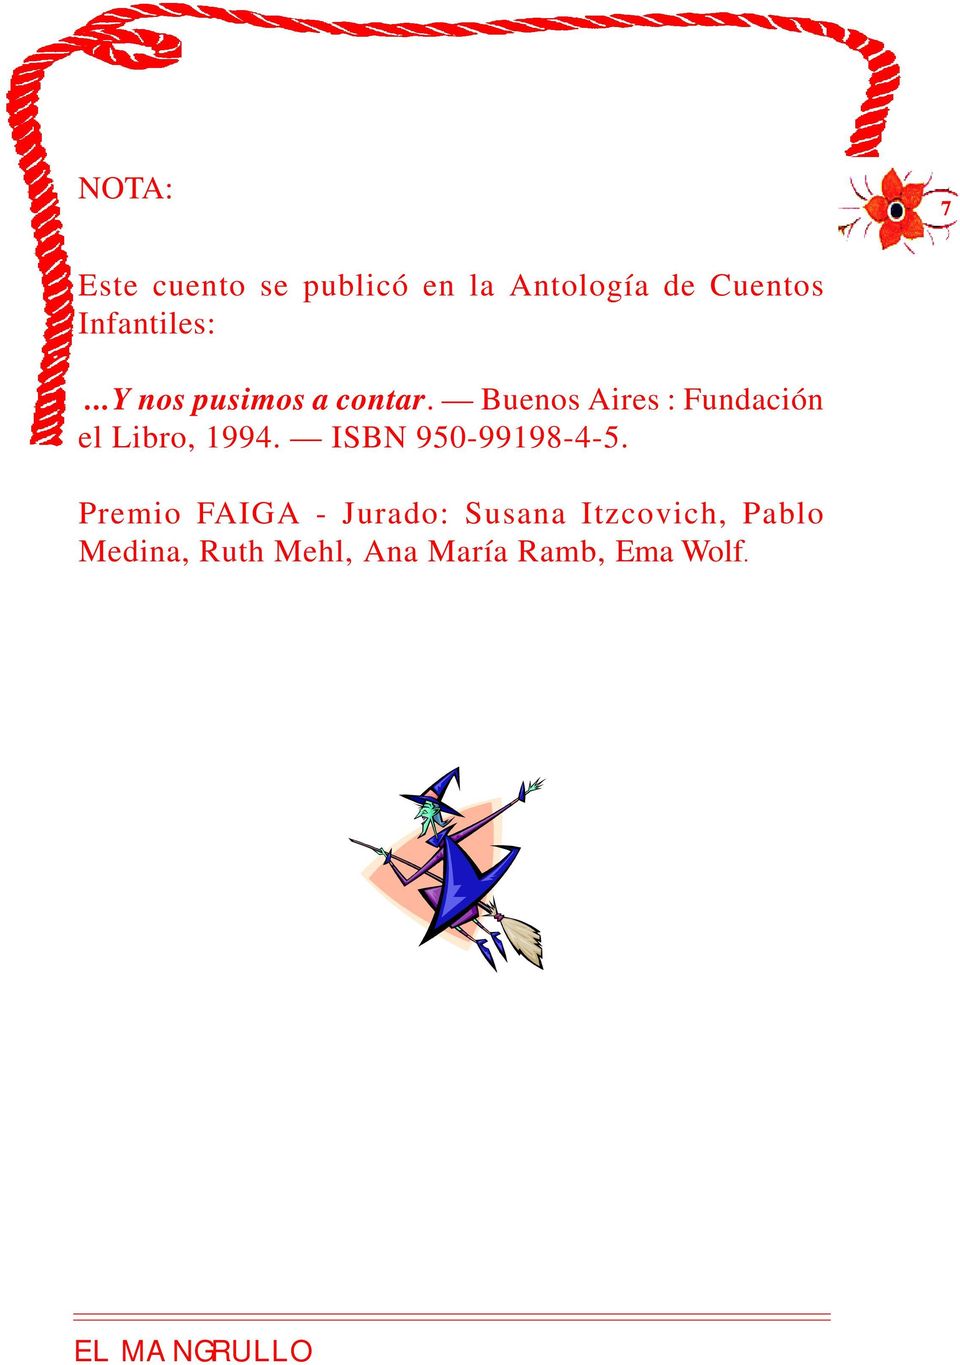 Buenos Aires : Fundación el Libro, 1994. ISBN 950-99198-4-5.